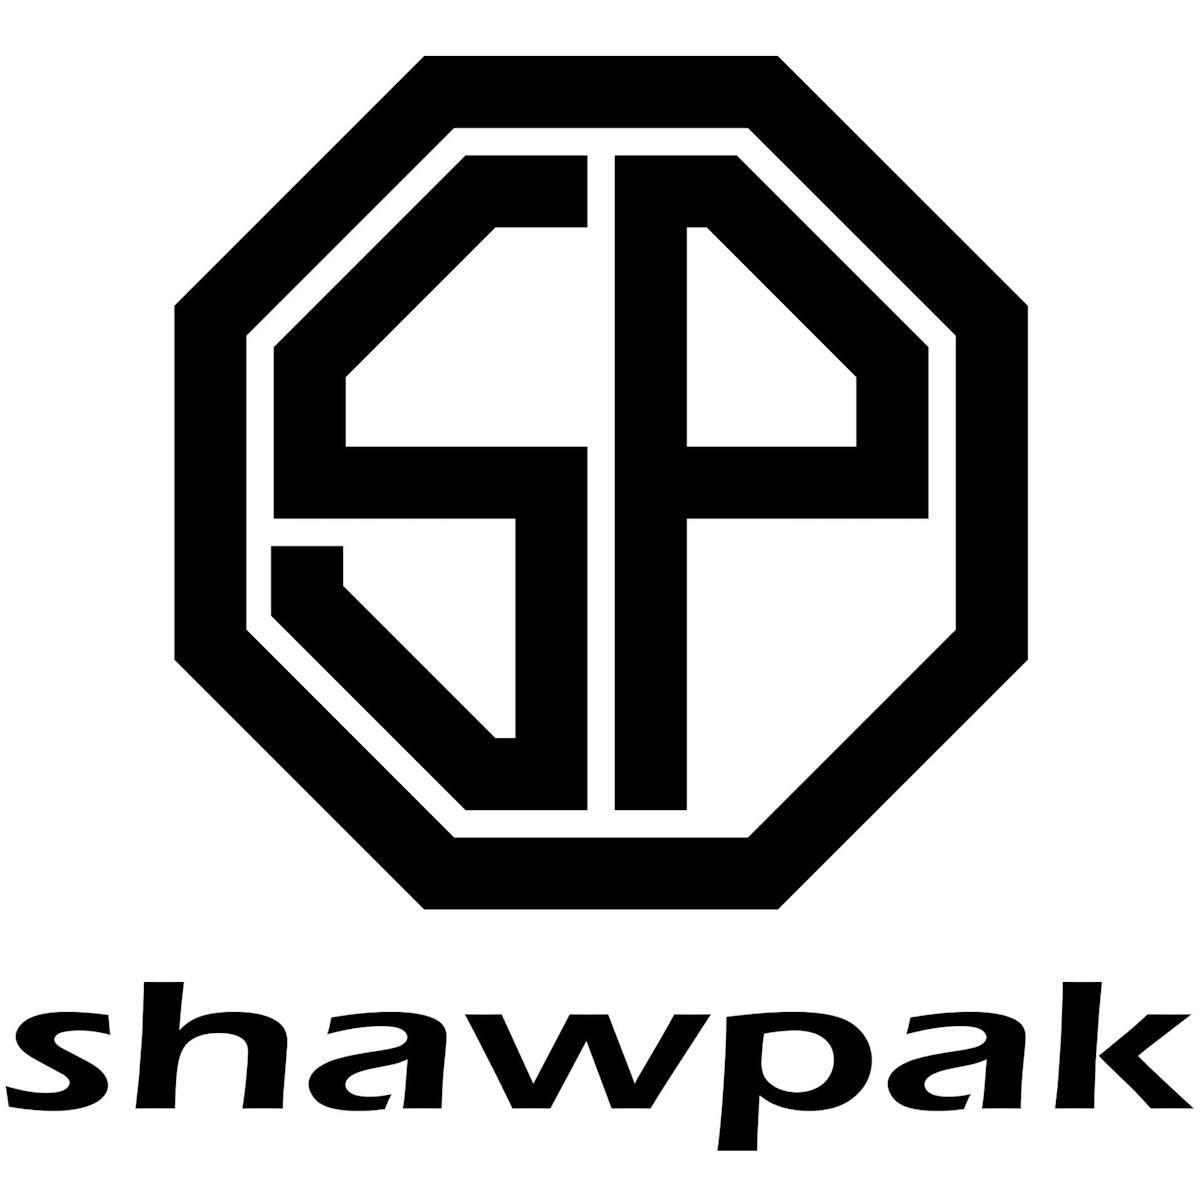 shawpak_logo